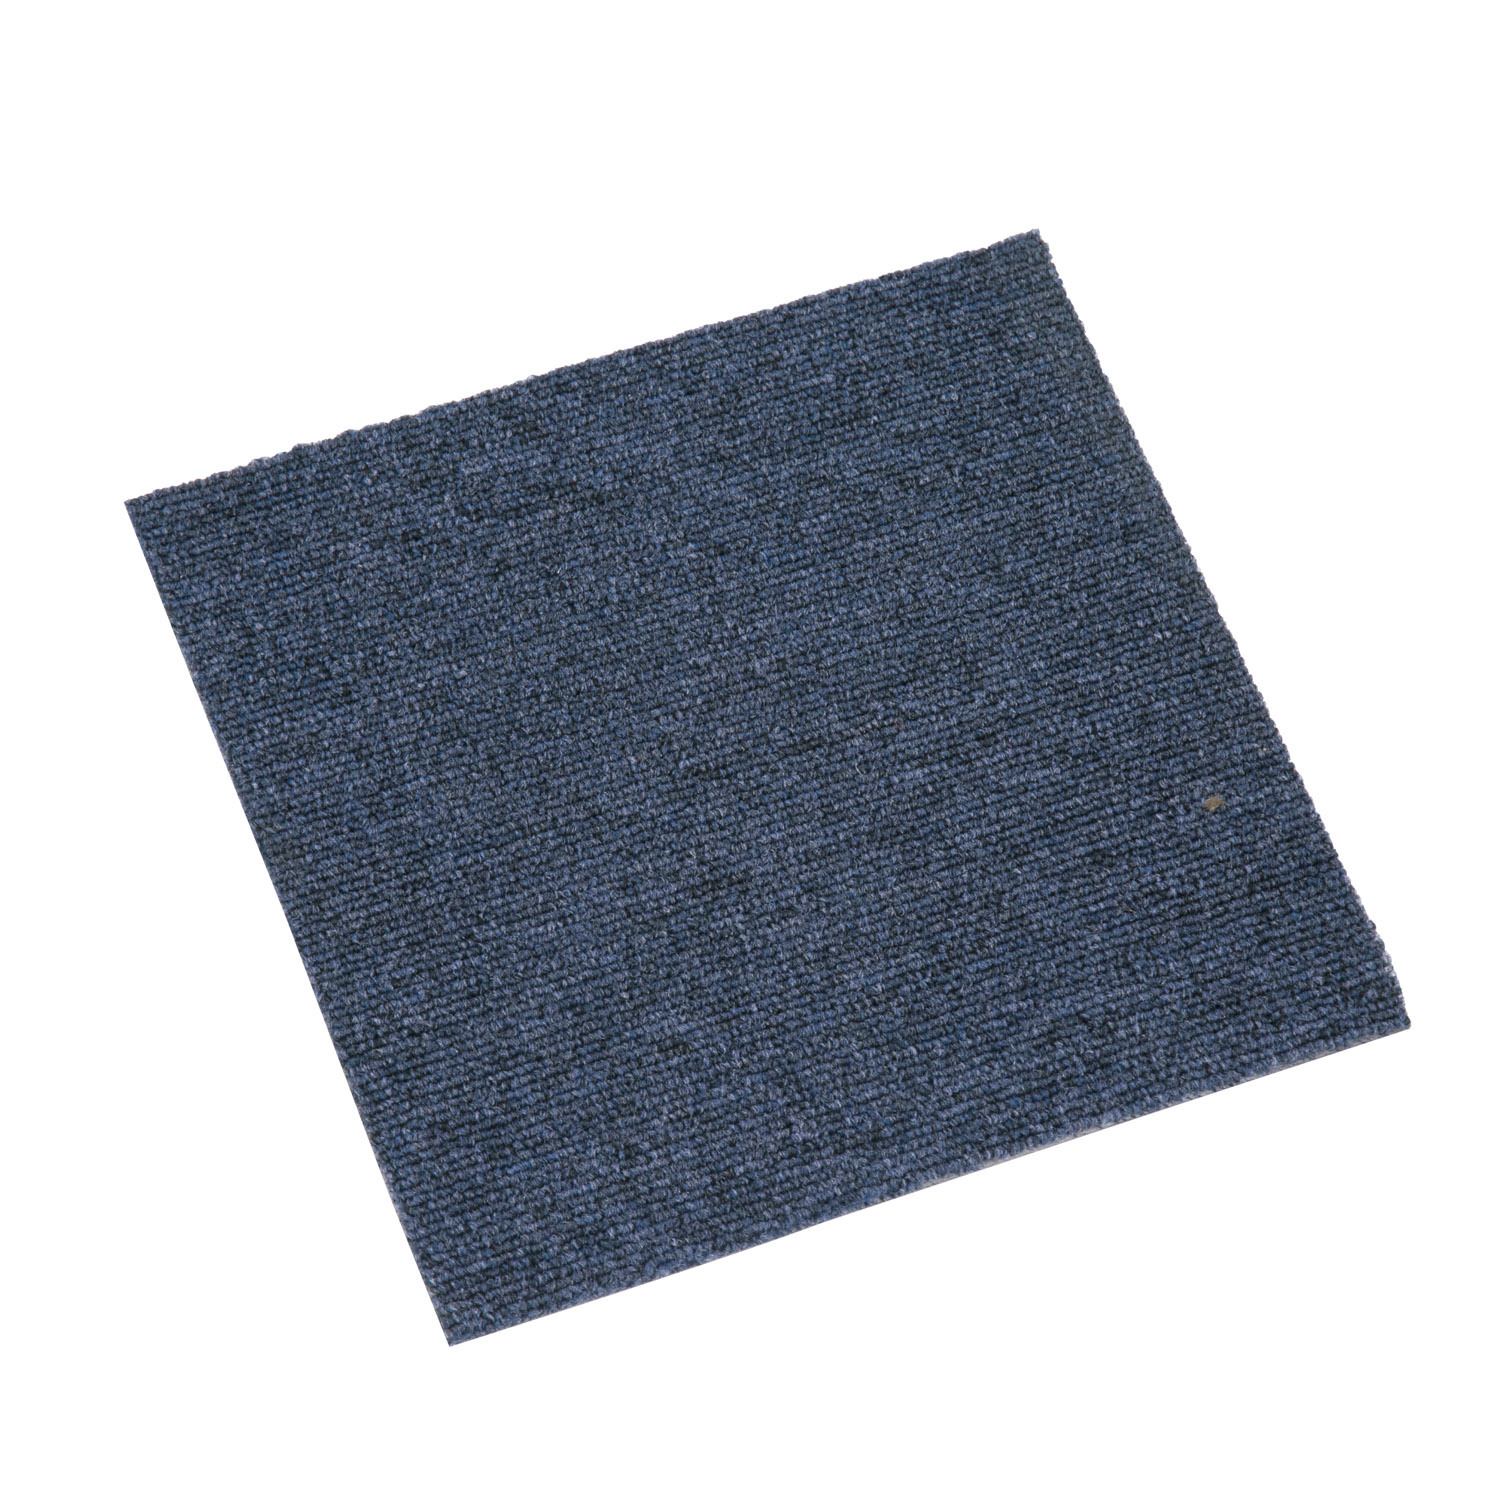 Vinyl Luxury Carpet Tiles For Garage